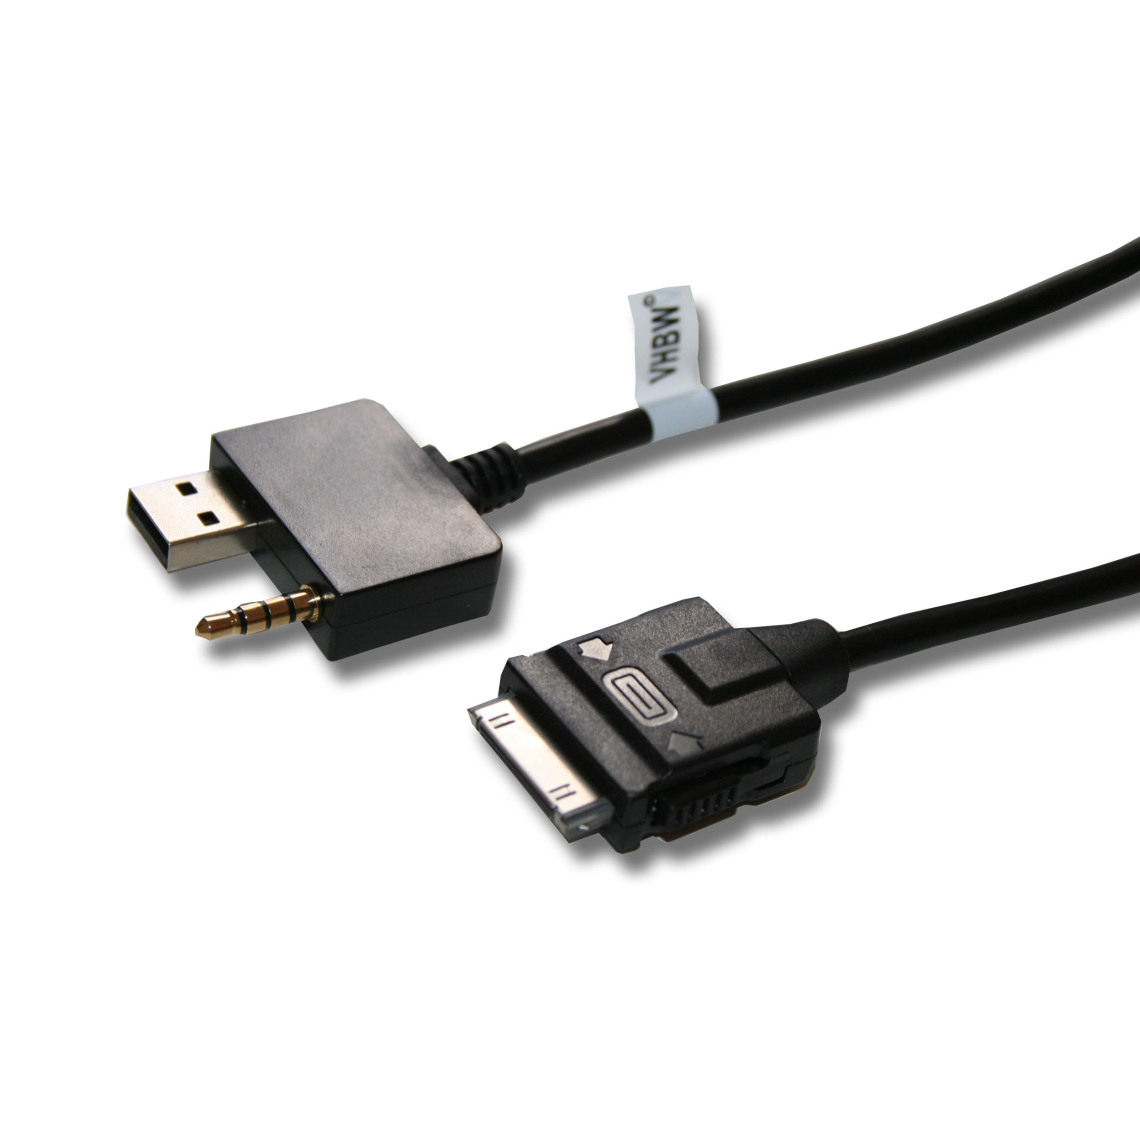 Vhbw - vhbw Câble adaptateur de ligne AUX Radio compatible avec Hyundai i30, i40, i40 cw, ix35 voiture, véhicule - USB - Alimentation modulaire